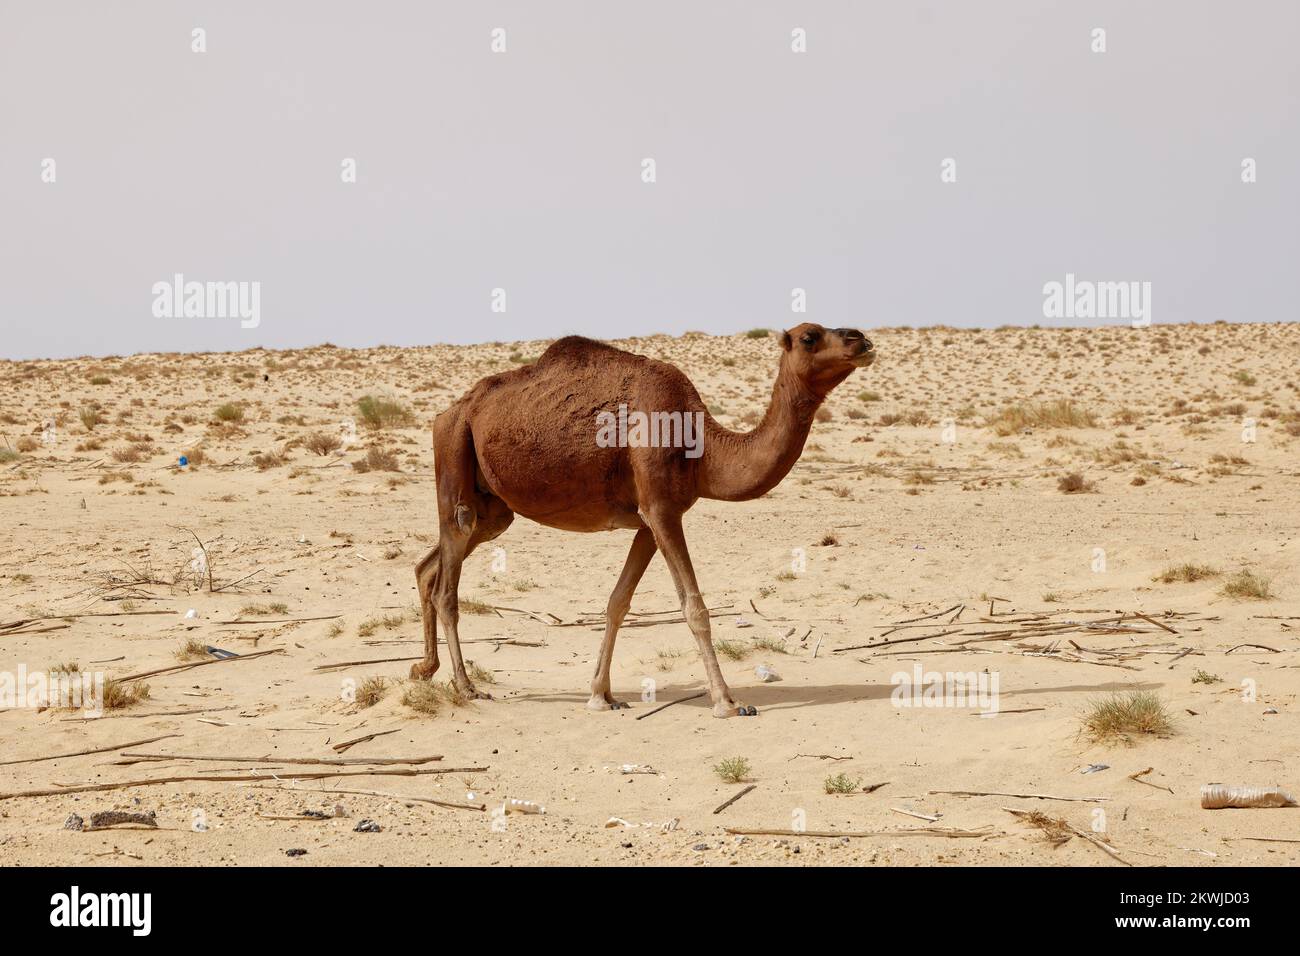 Einsames Kamel in der Wüste. Wilde Tiere in ihrem natürlichen Lebensraum. Wildnis und Dürre Landschaften. Reise- und Tourismusziel in der Wüste. Stockfoto